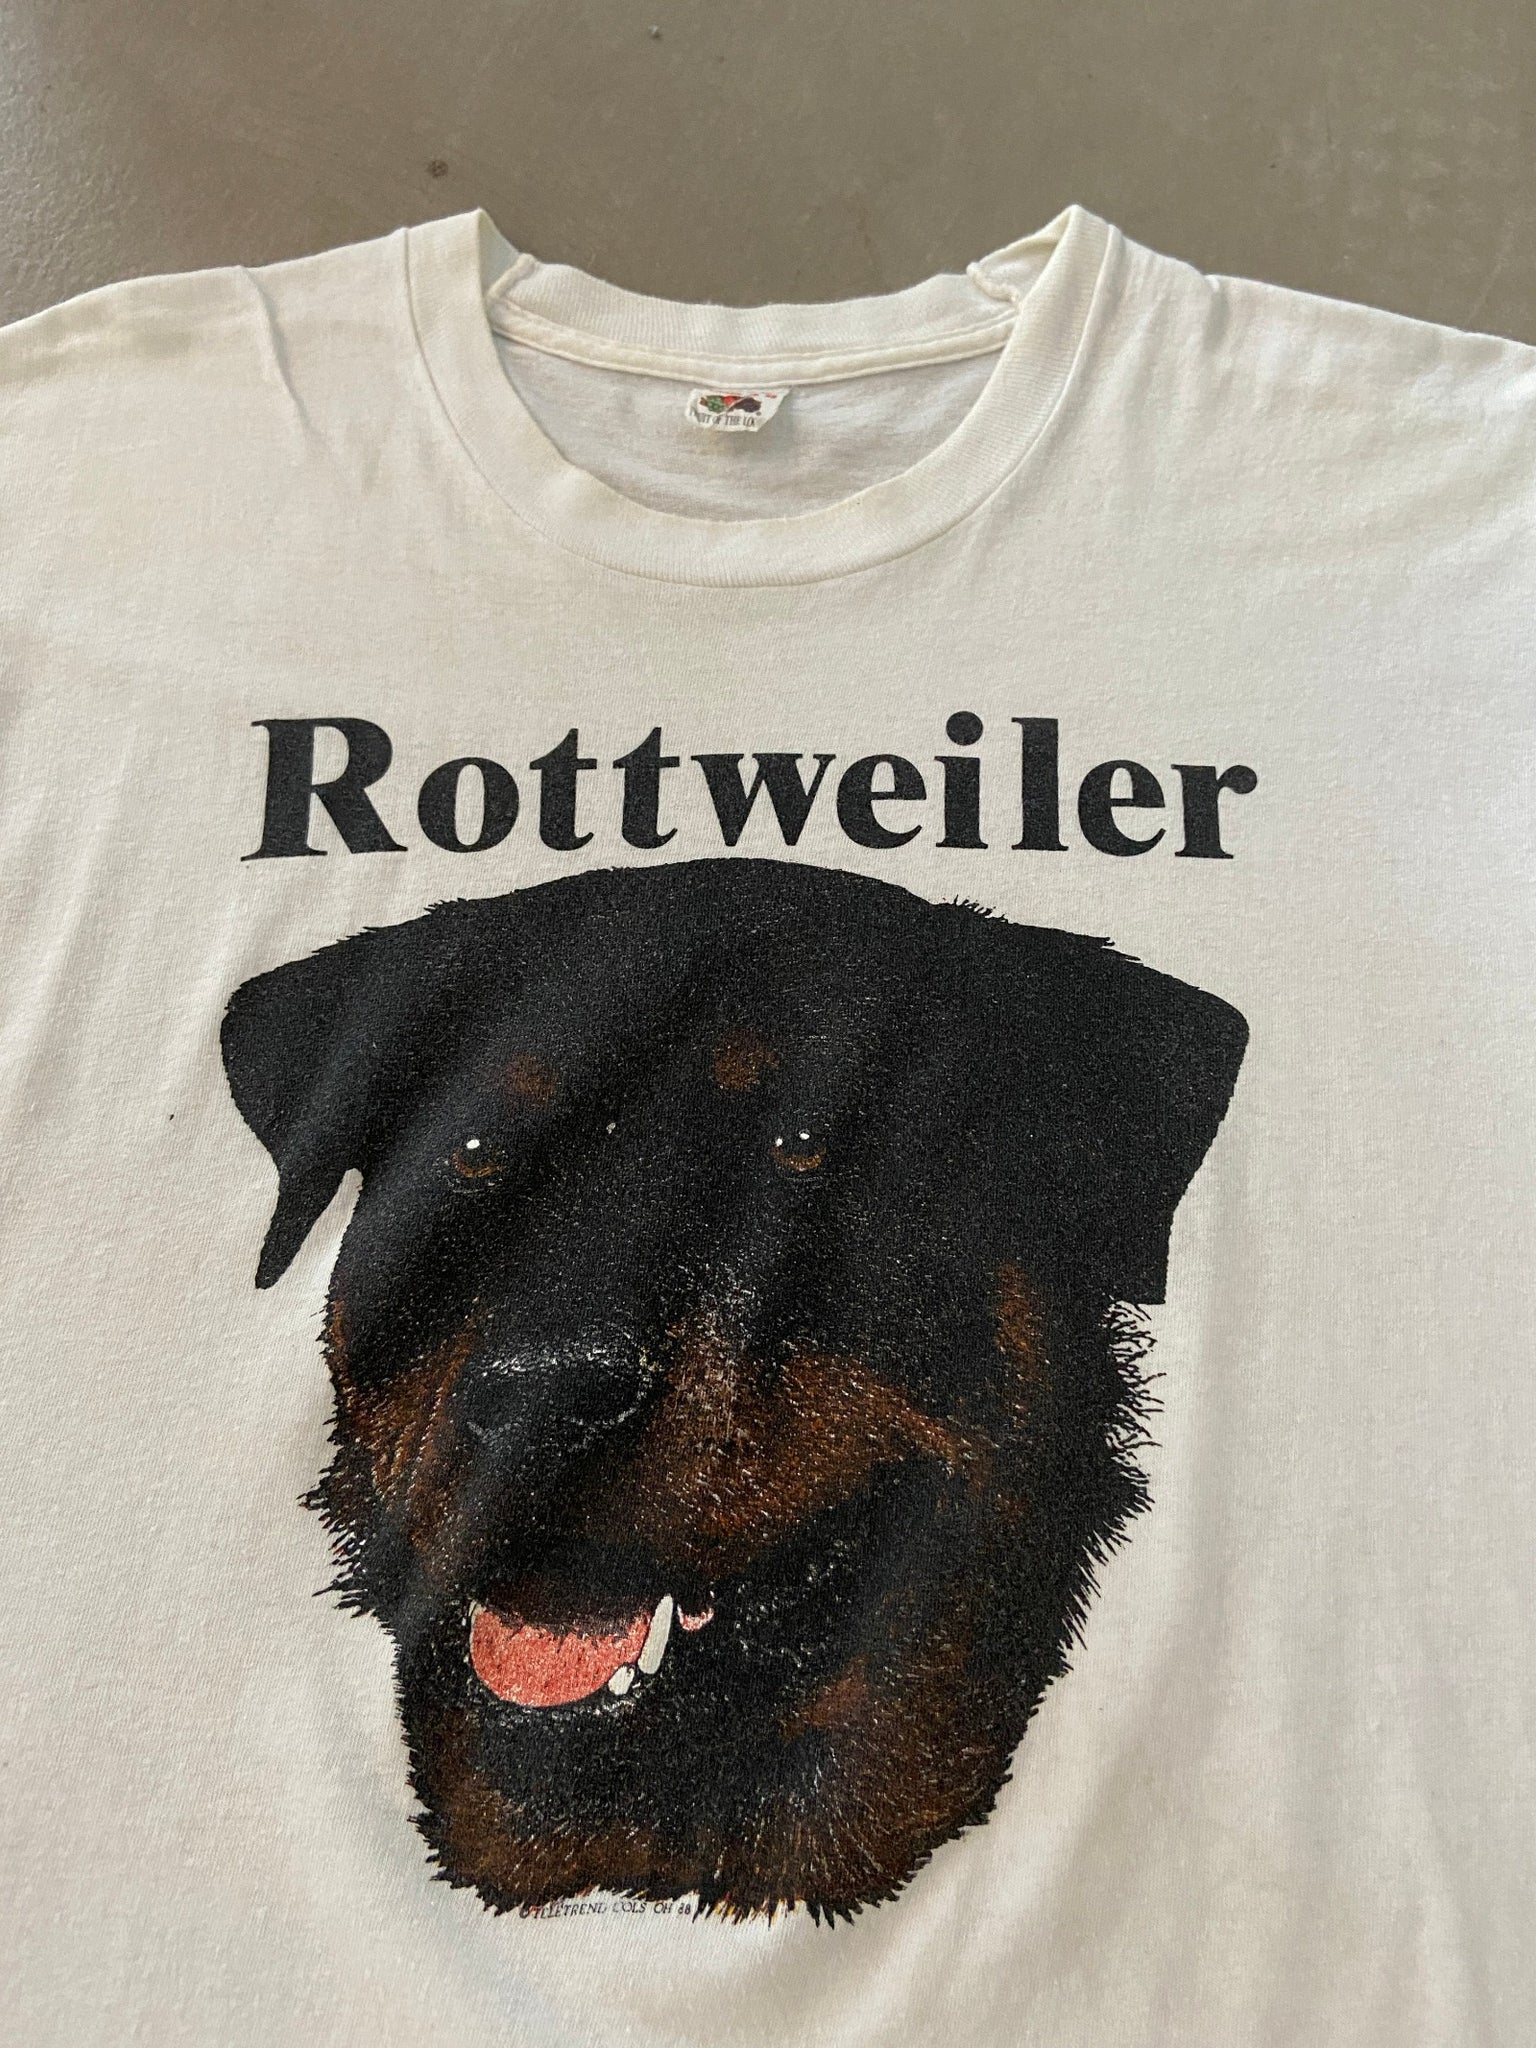 1988 Rottweiler T-shirt - XL